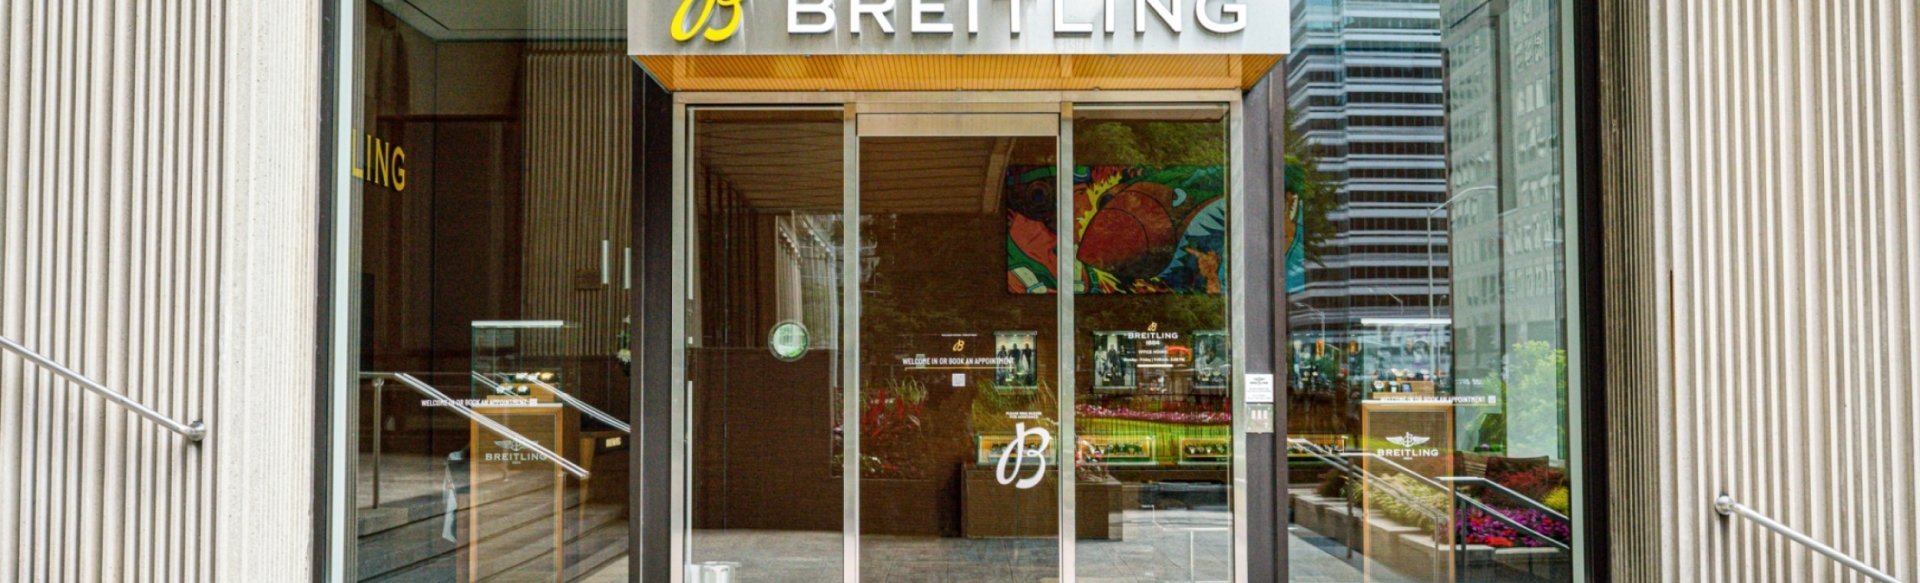 Breitling Boutique Toronto Bloor Street